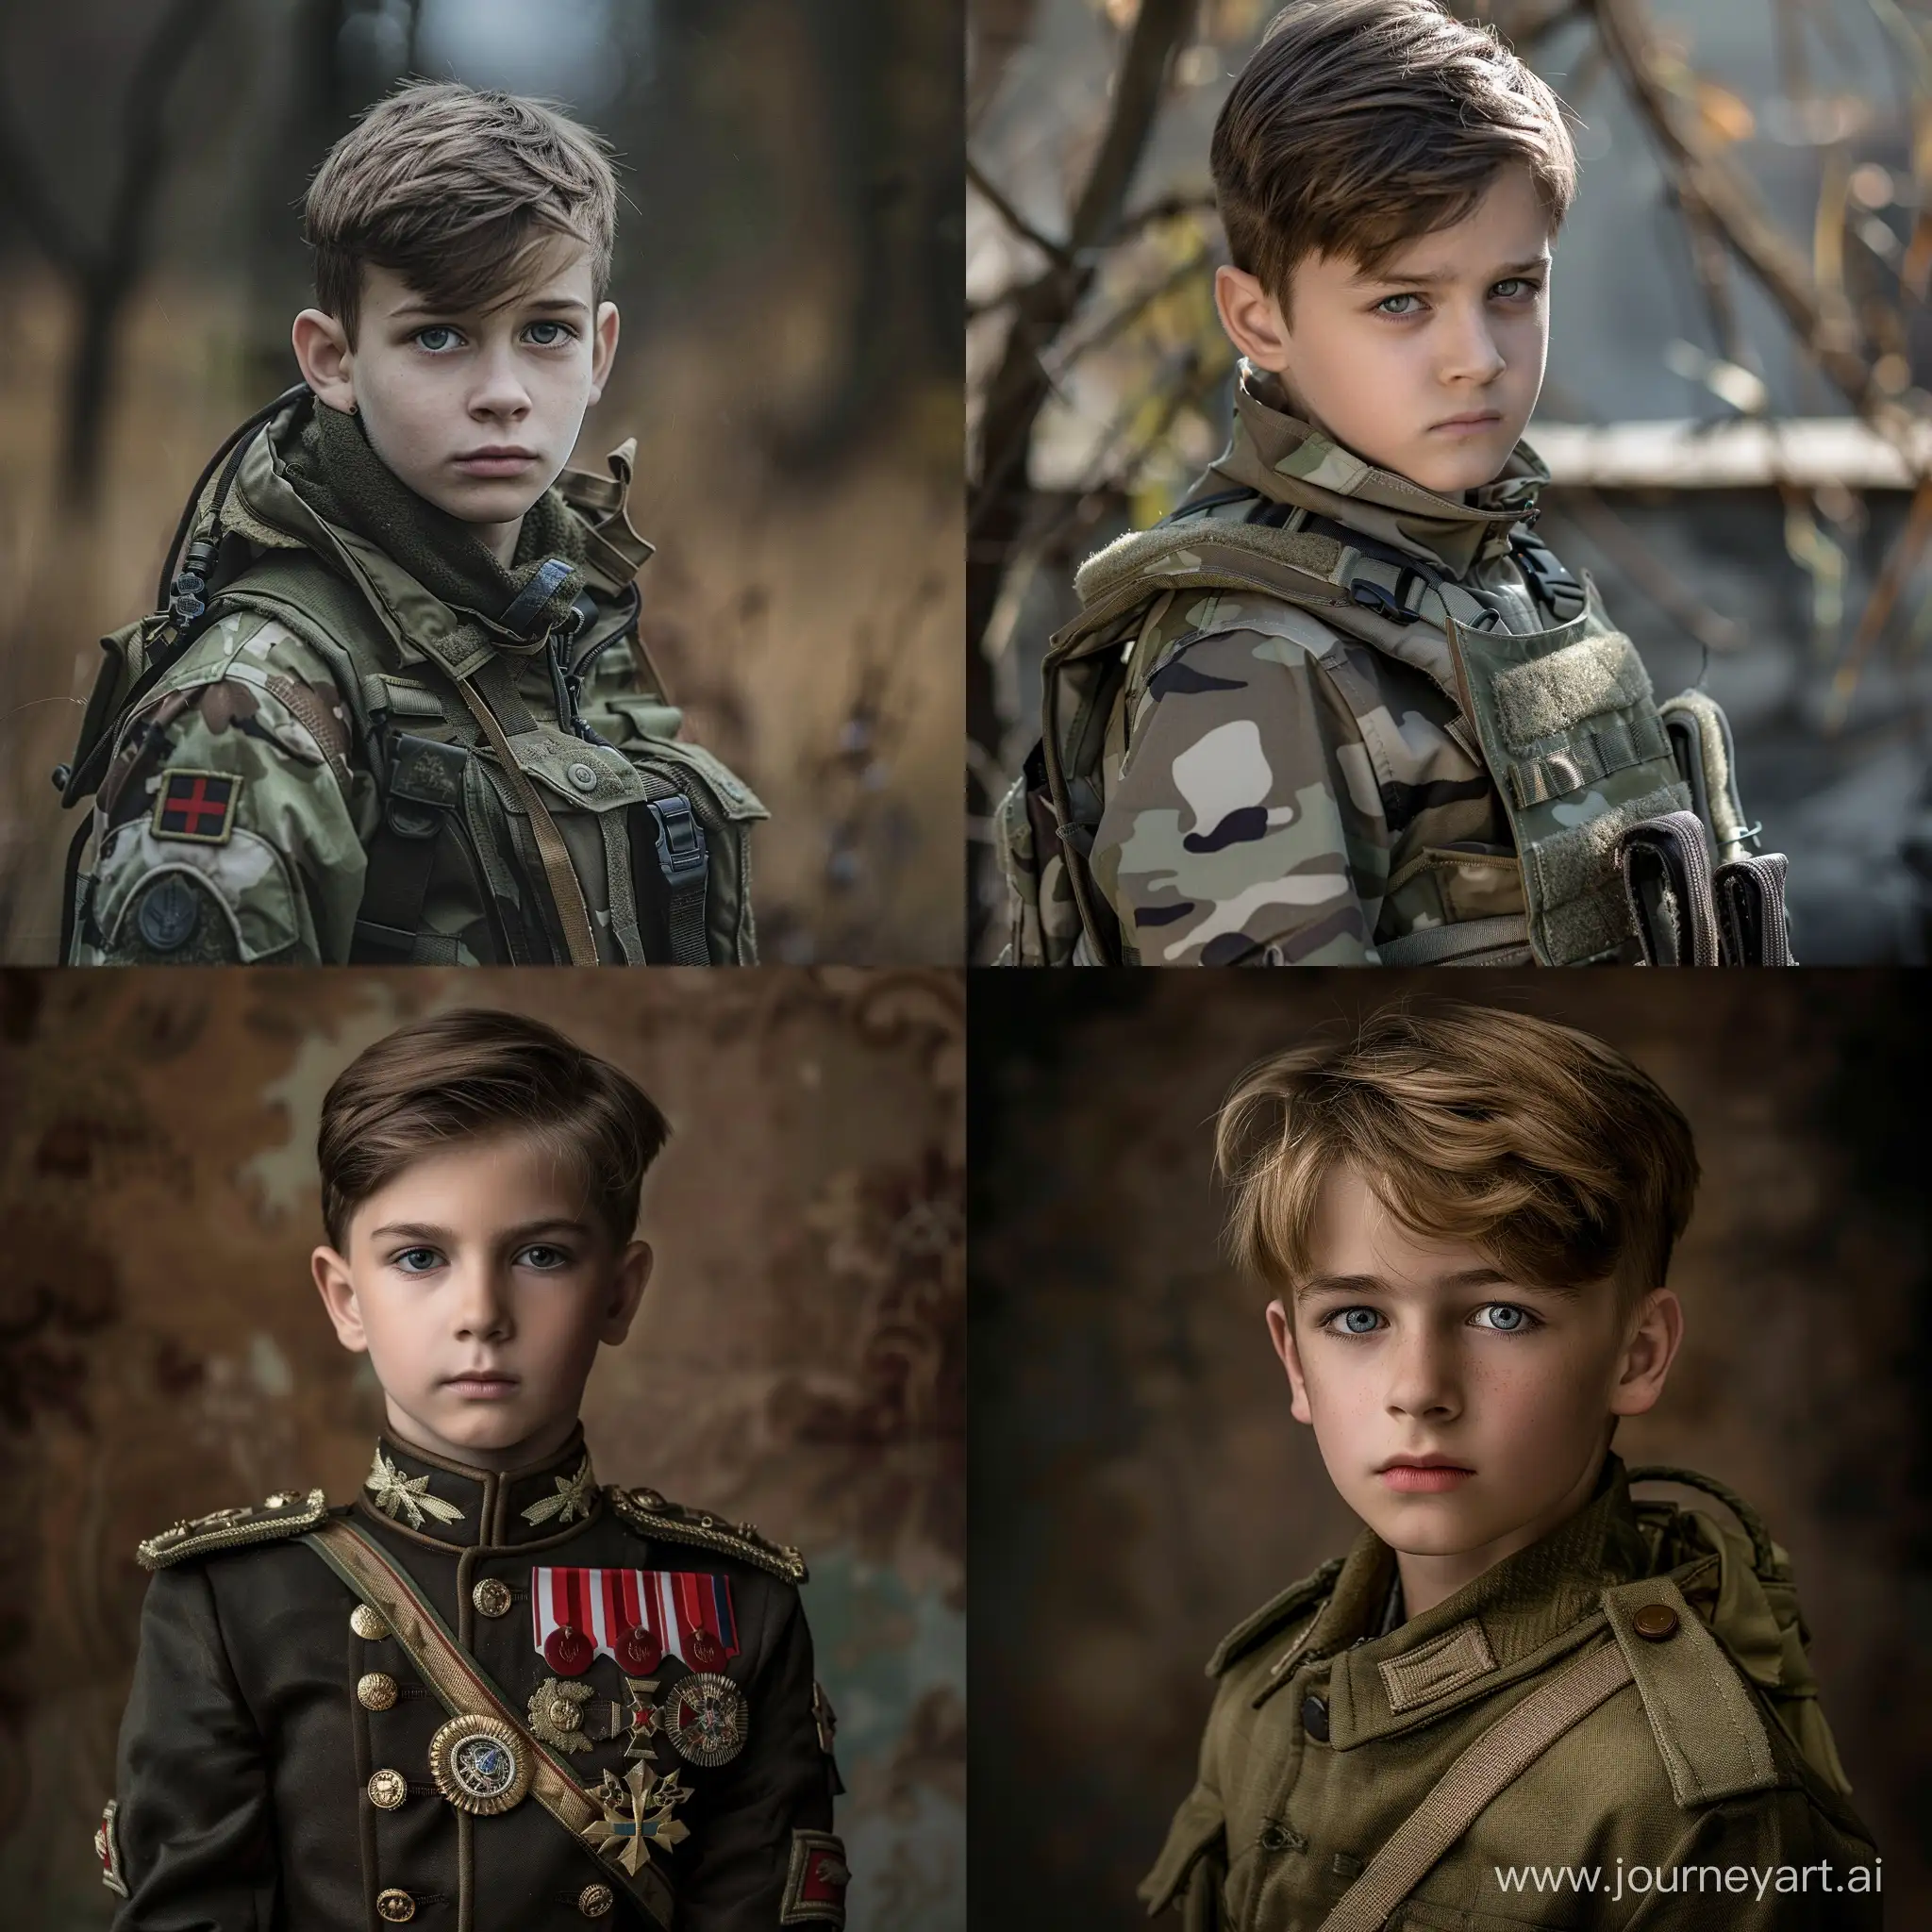 Мальчик на фотосессии в костюме военного реалистично, высокая детализация